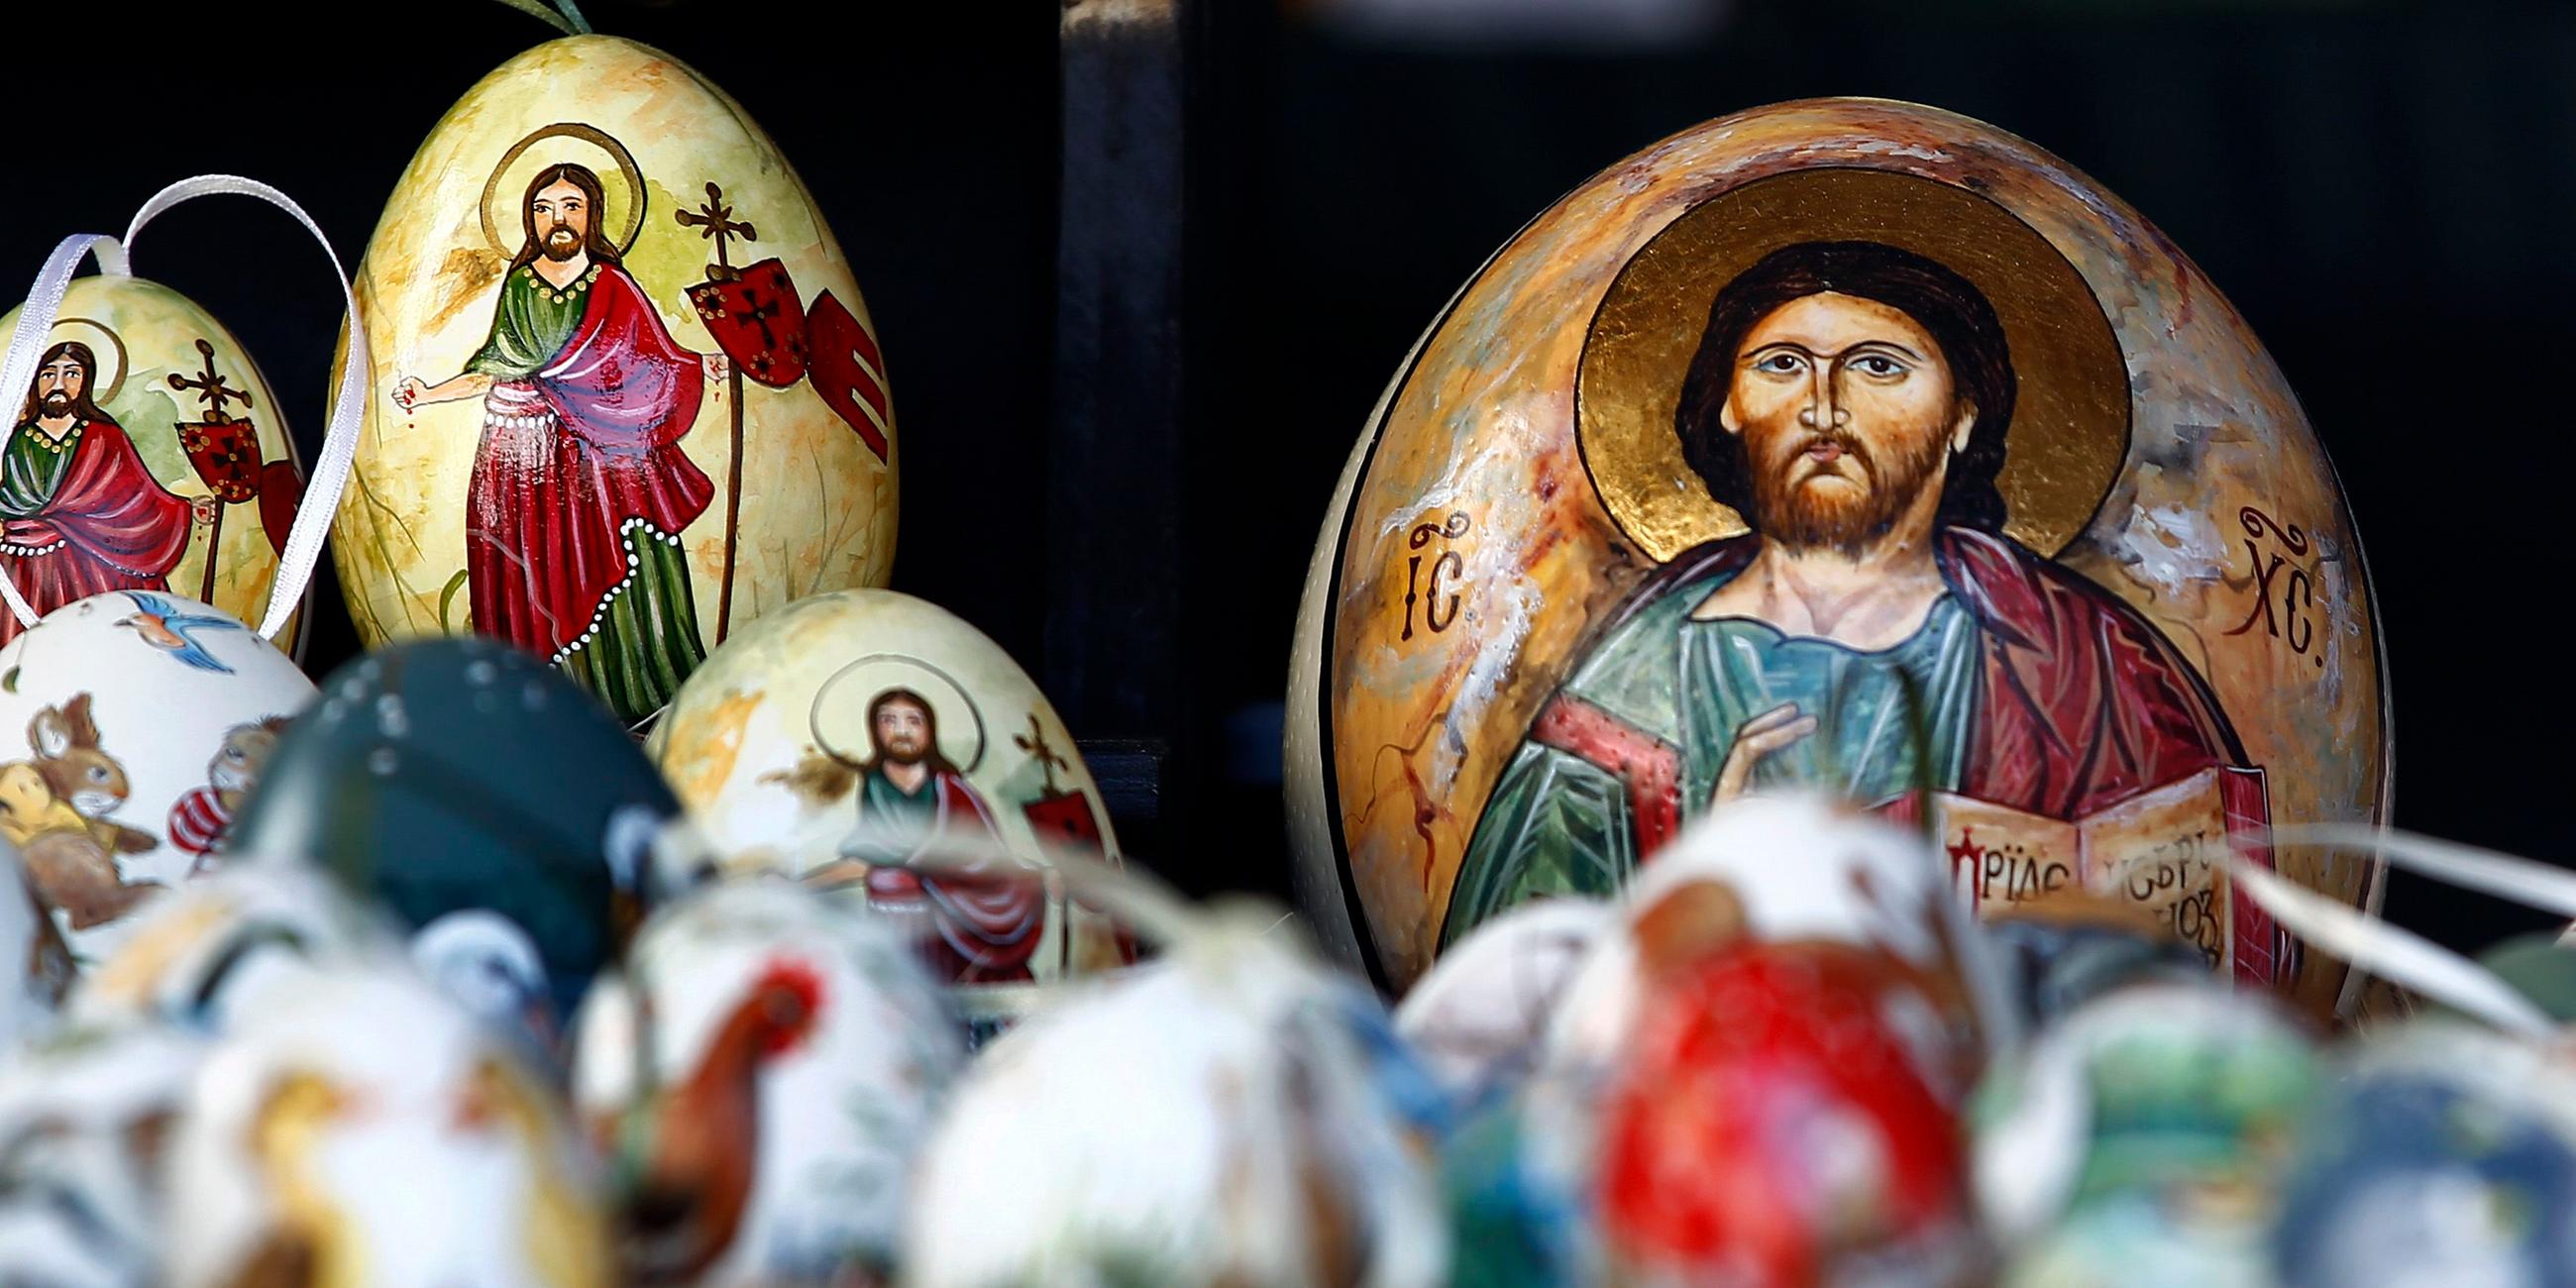 Kunstvoll bemalte Ostereier liegen in der Auslage eines Standes auf einem Ostermarkt in Bad Tölz. Die Eier sind mit kirchlichen Ostermotiven verziert.